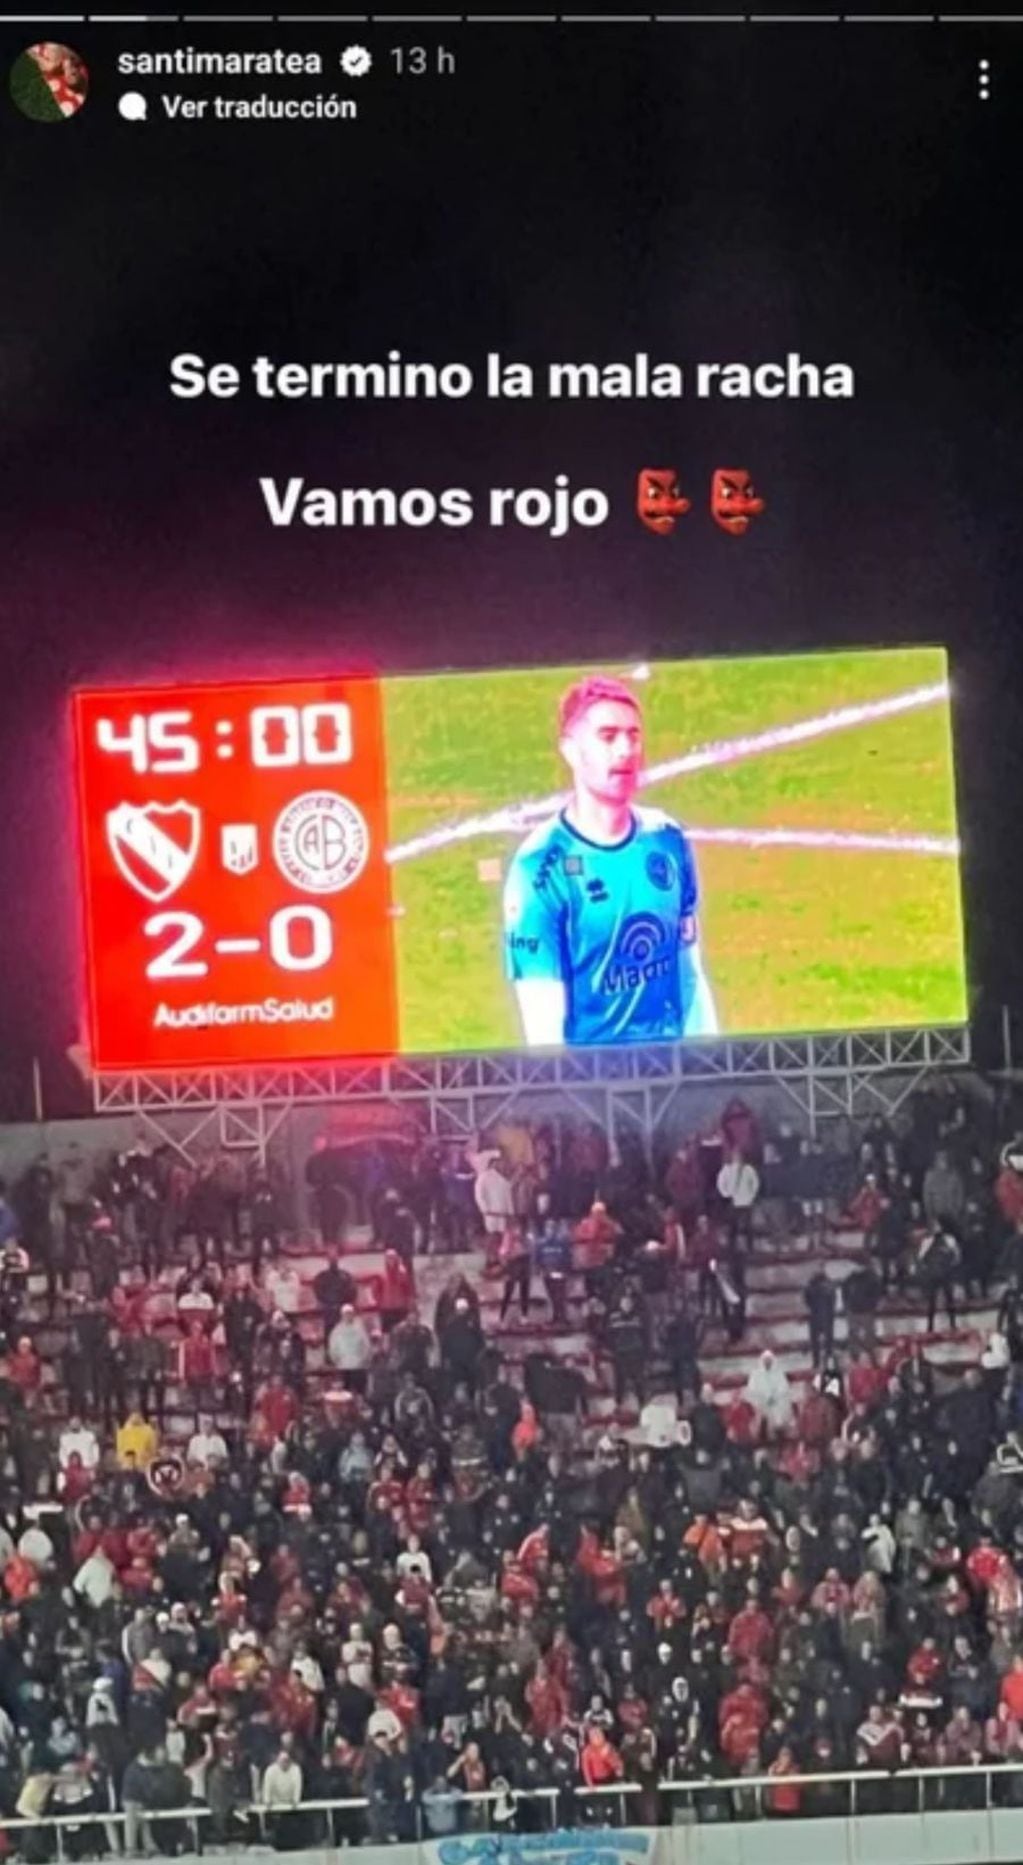 Santi Maratea optimista con el futuro de Independiente